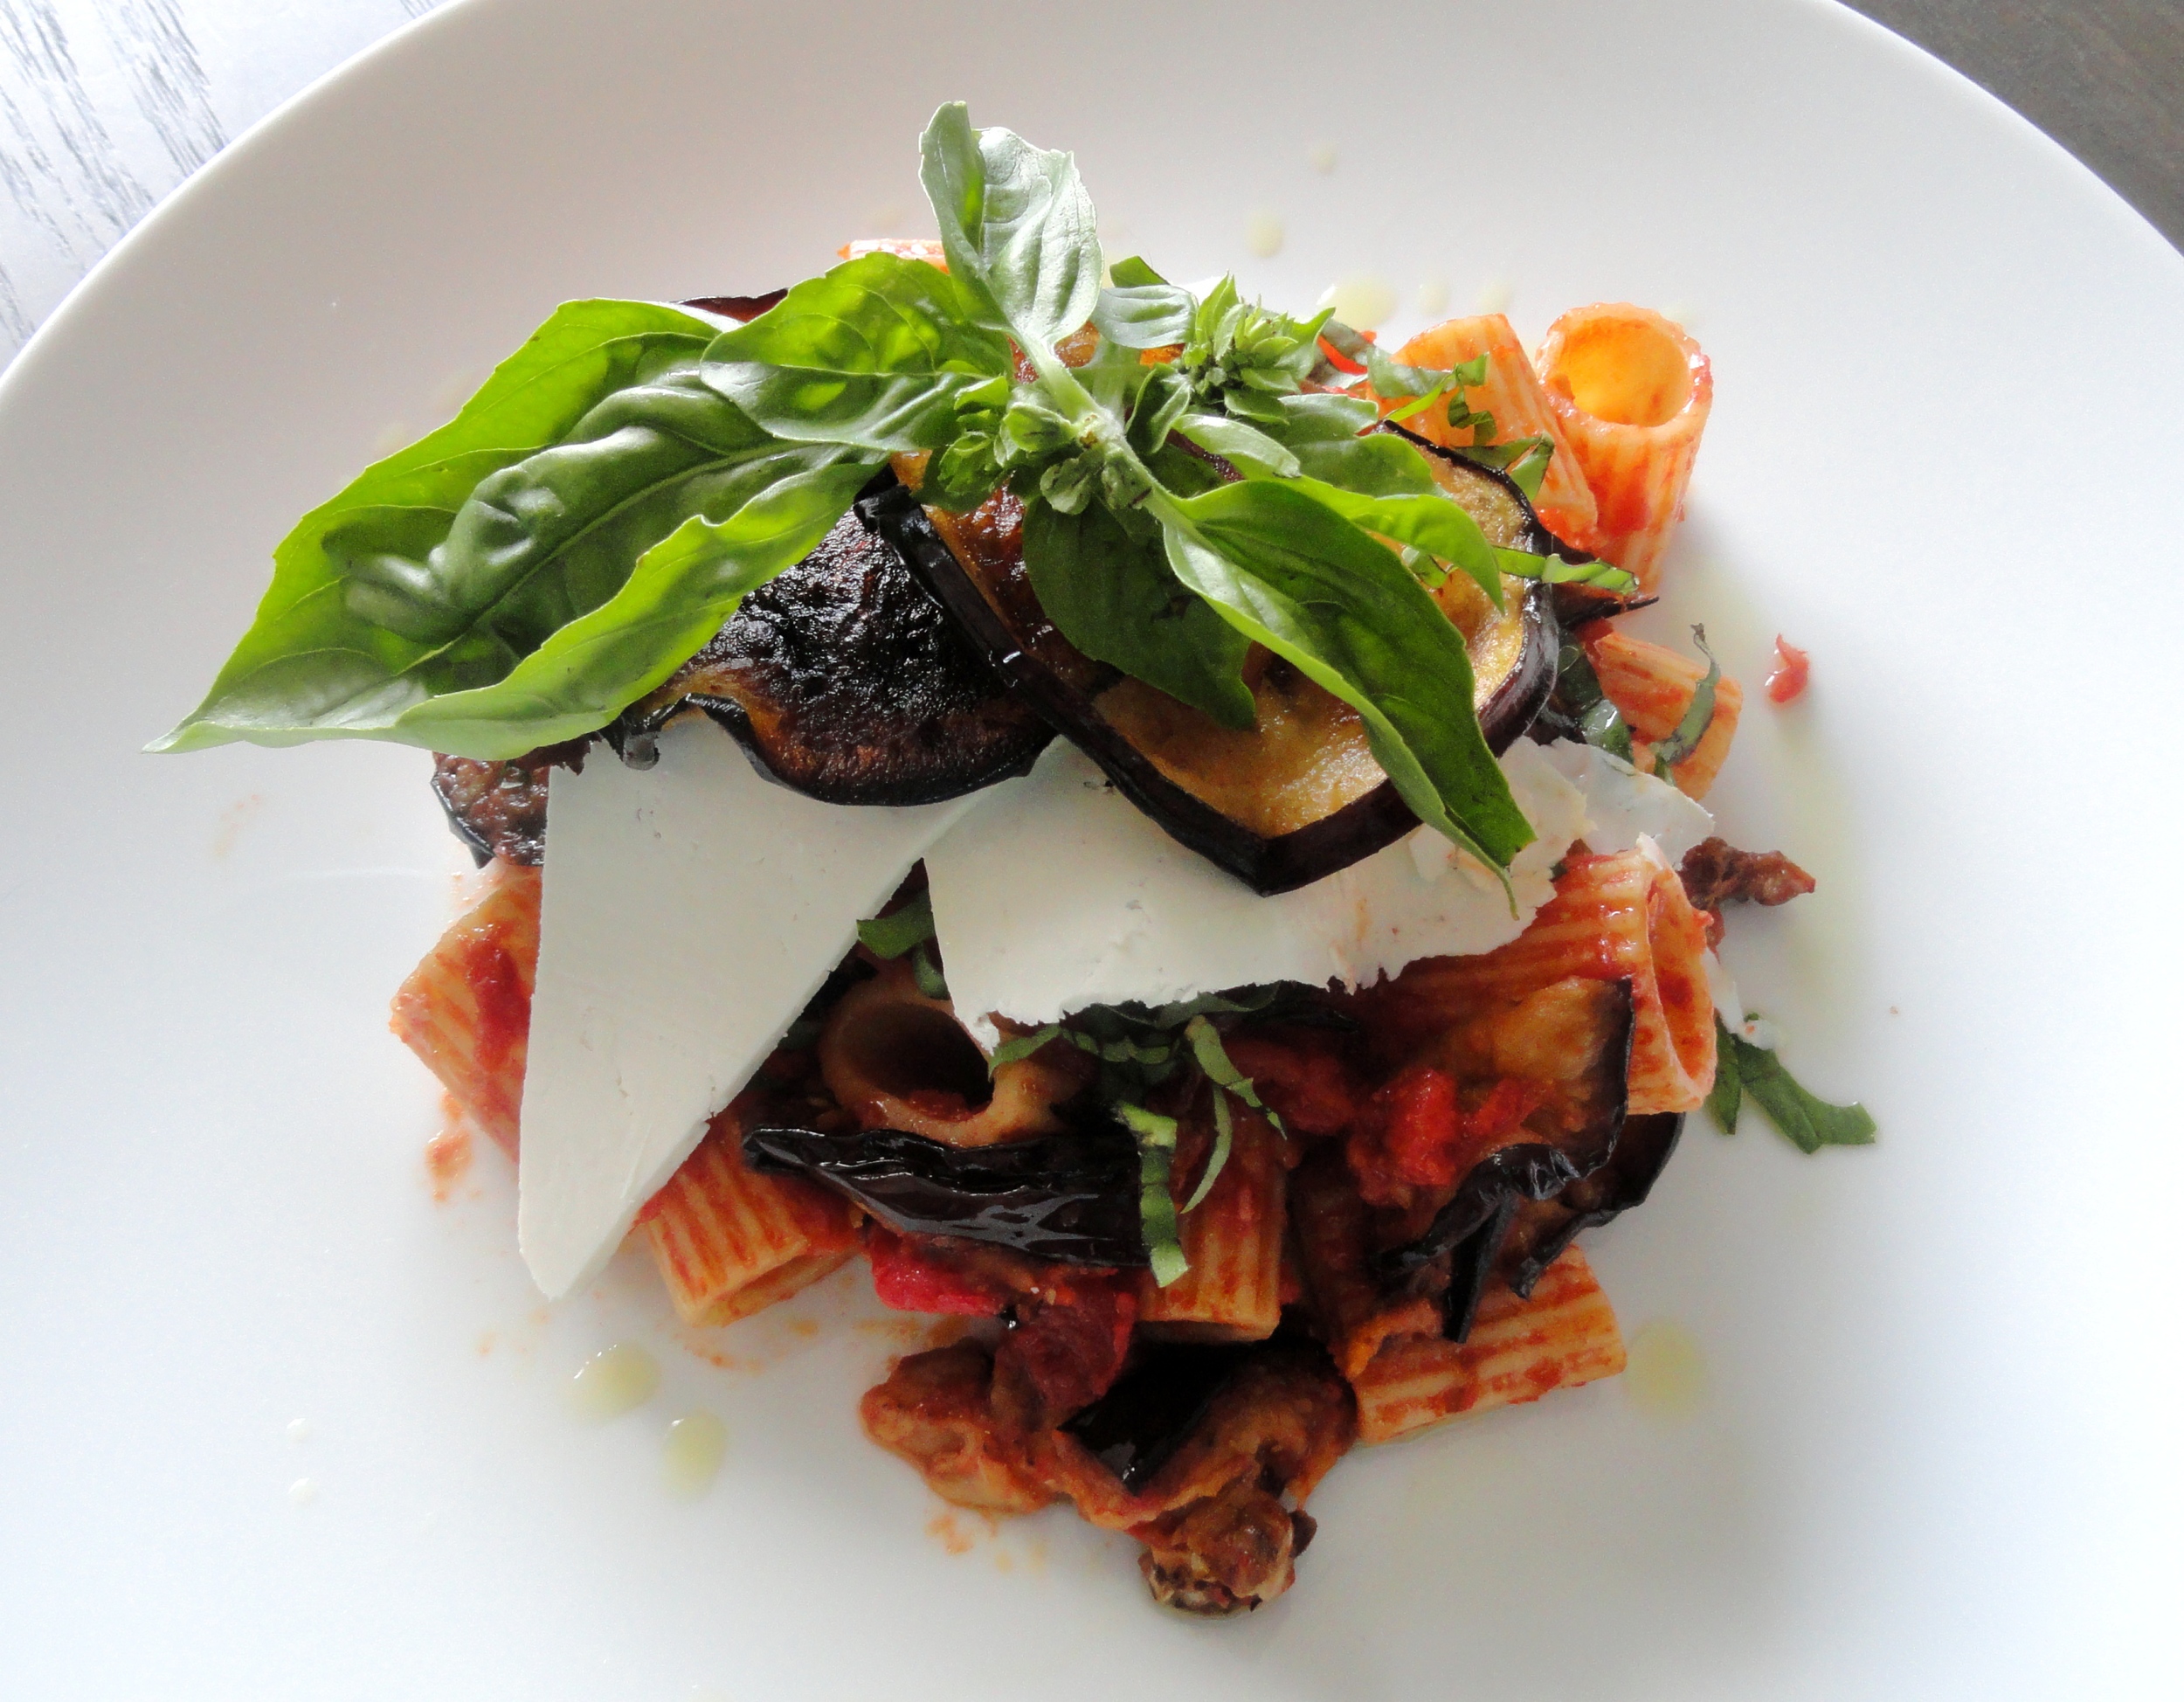 Rigatoni alla Norma: tomato, eggplant, ricotta salata and basil